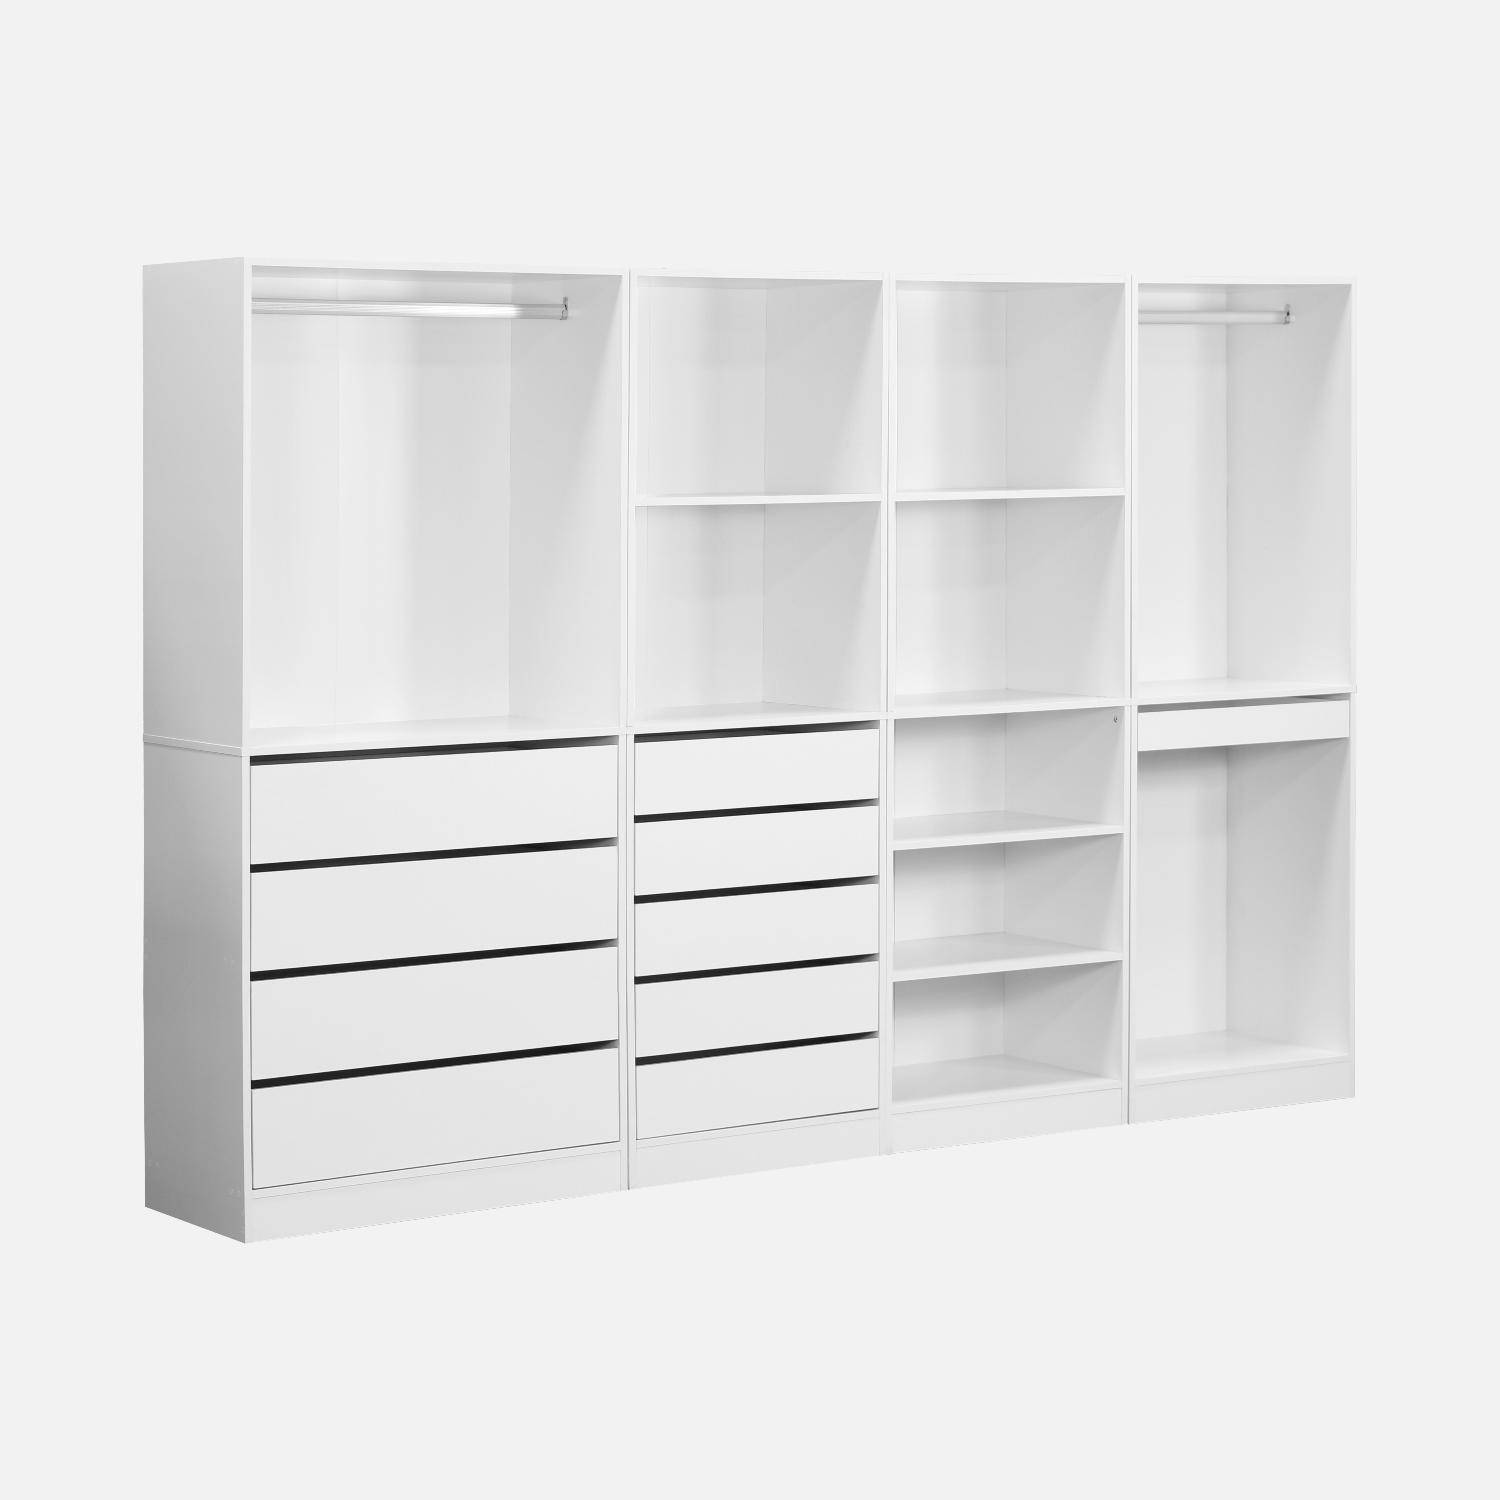 Modular wardrobe set with 4 units, white, laminate panels,sweeek,Photo4